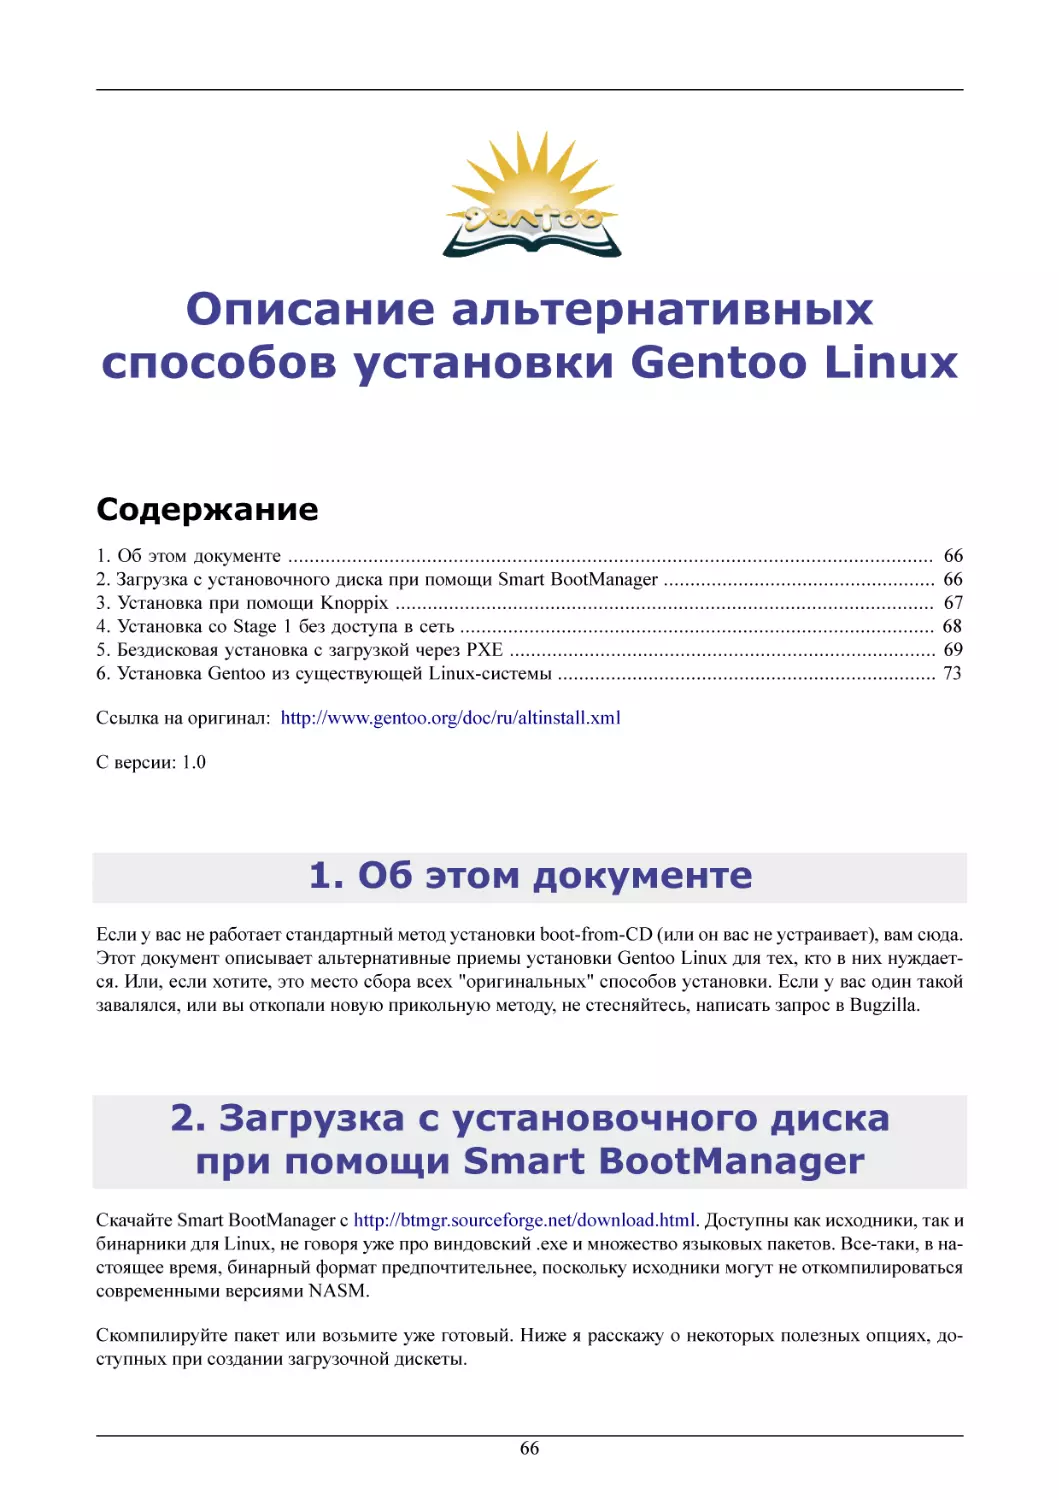 Описание альтернативных способов установки Gentoo
Об этом документе
Загрузка с установочного диска при помощи Smart